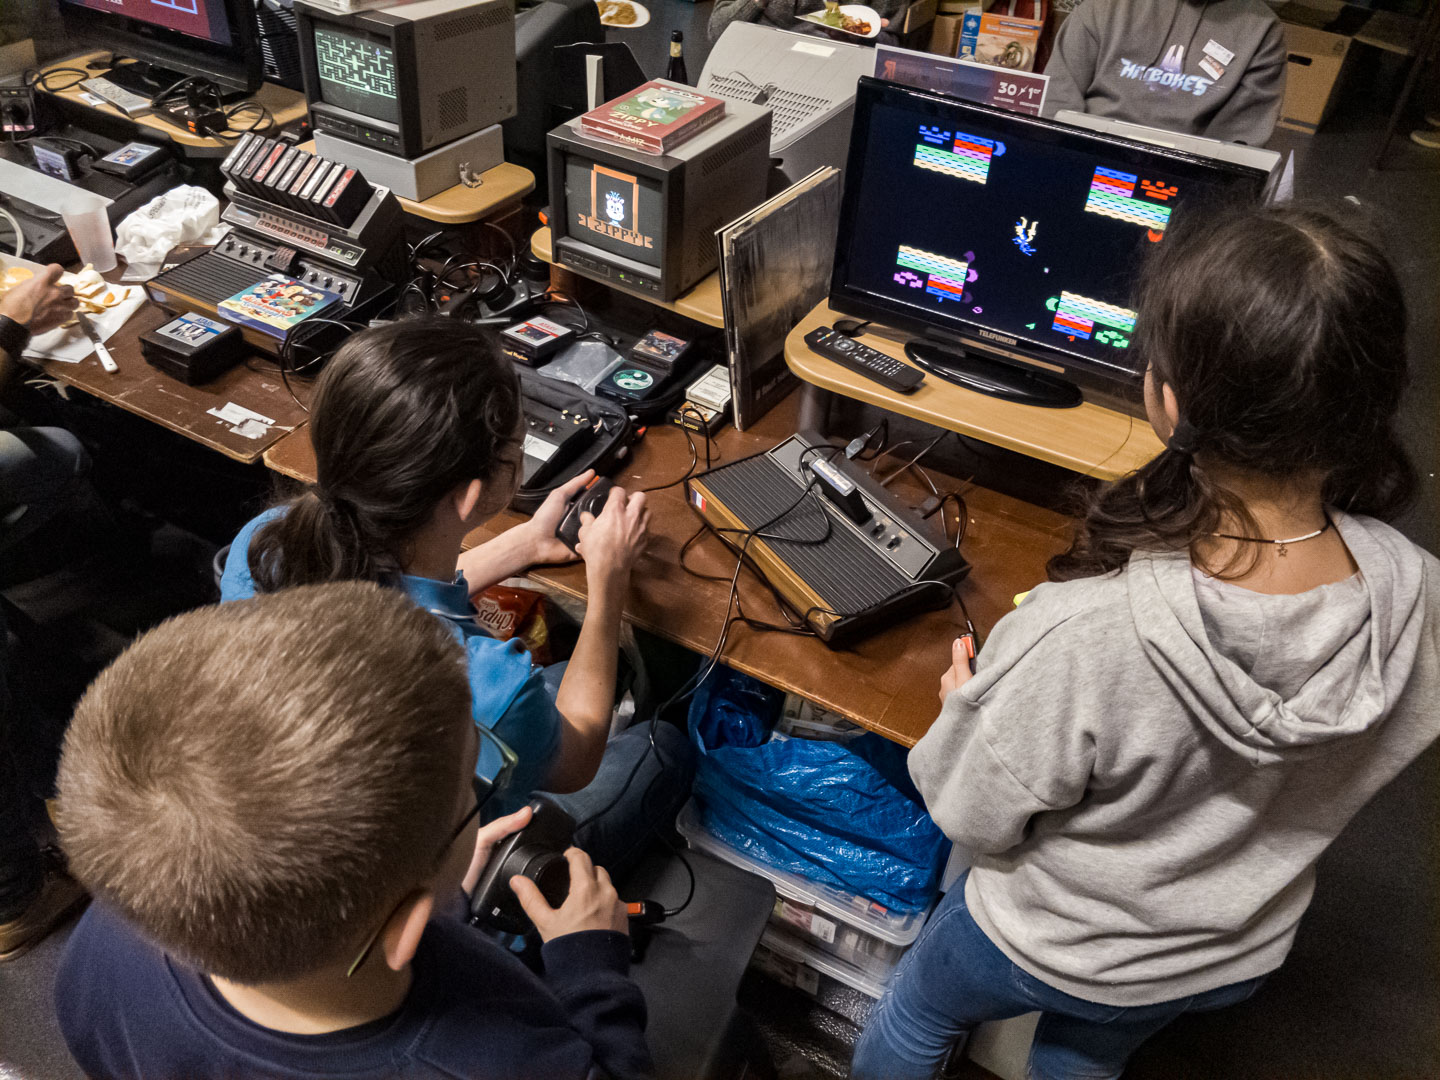 Kids having fun on an Atari 2600